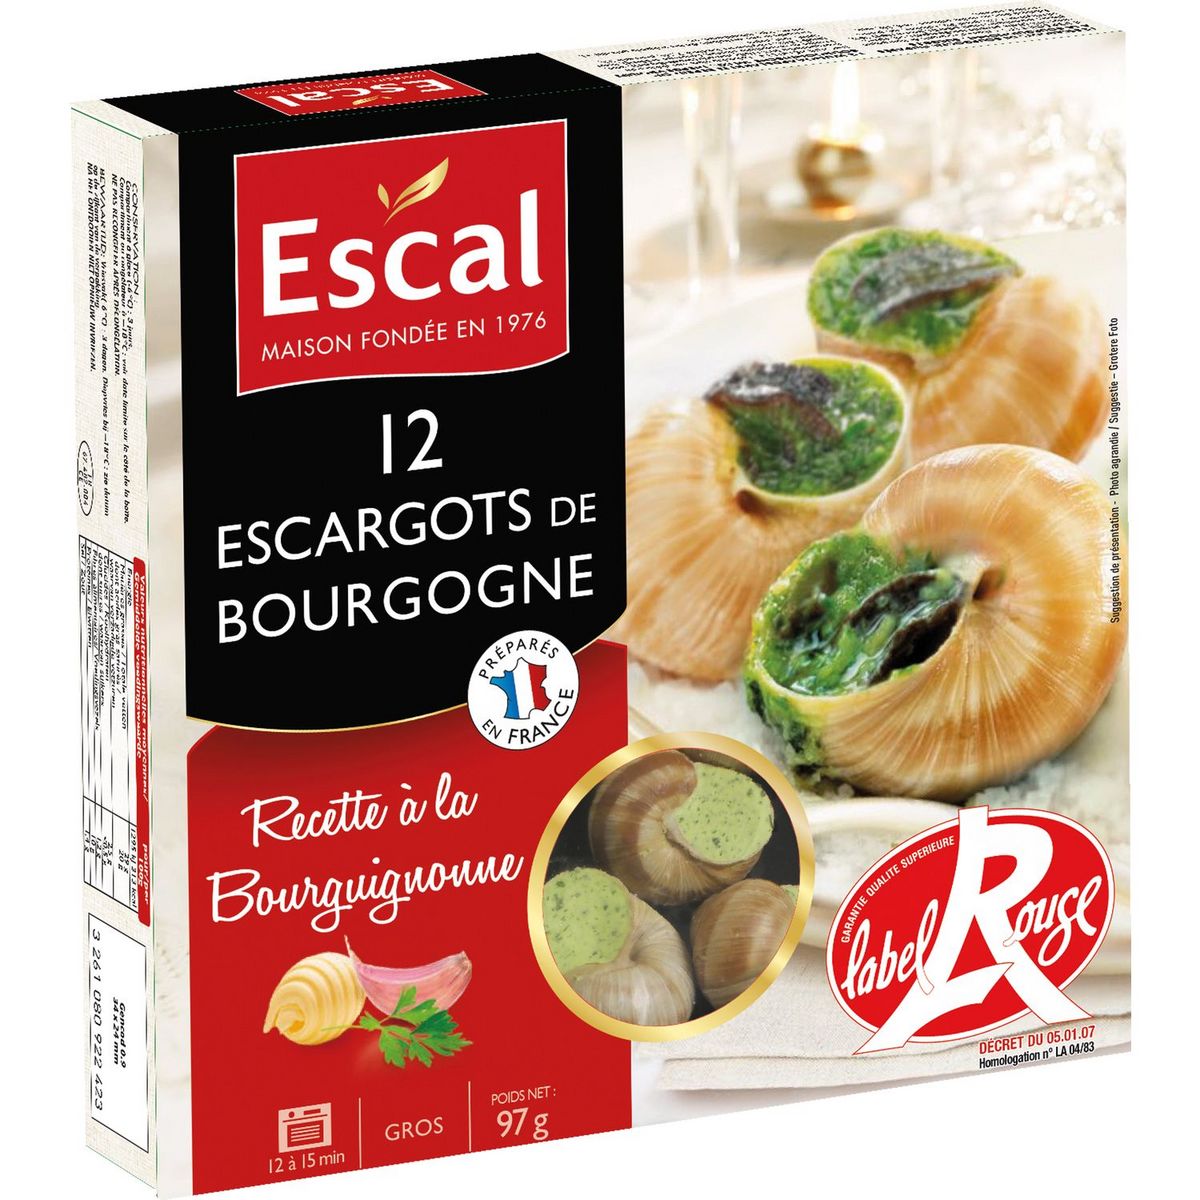 ESCAL Escargot de Bourgogne recette à la Bourguignonne label rouge 12 pièces 97g